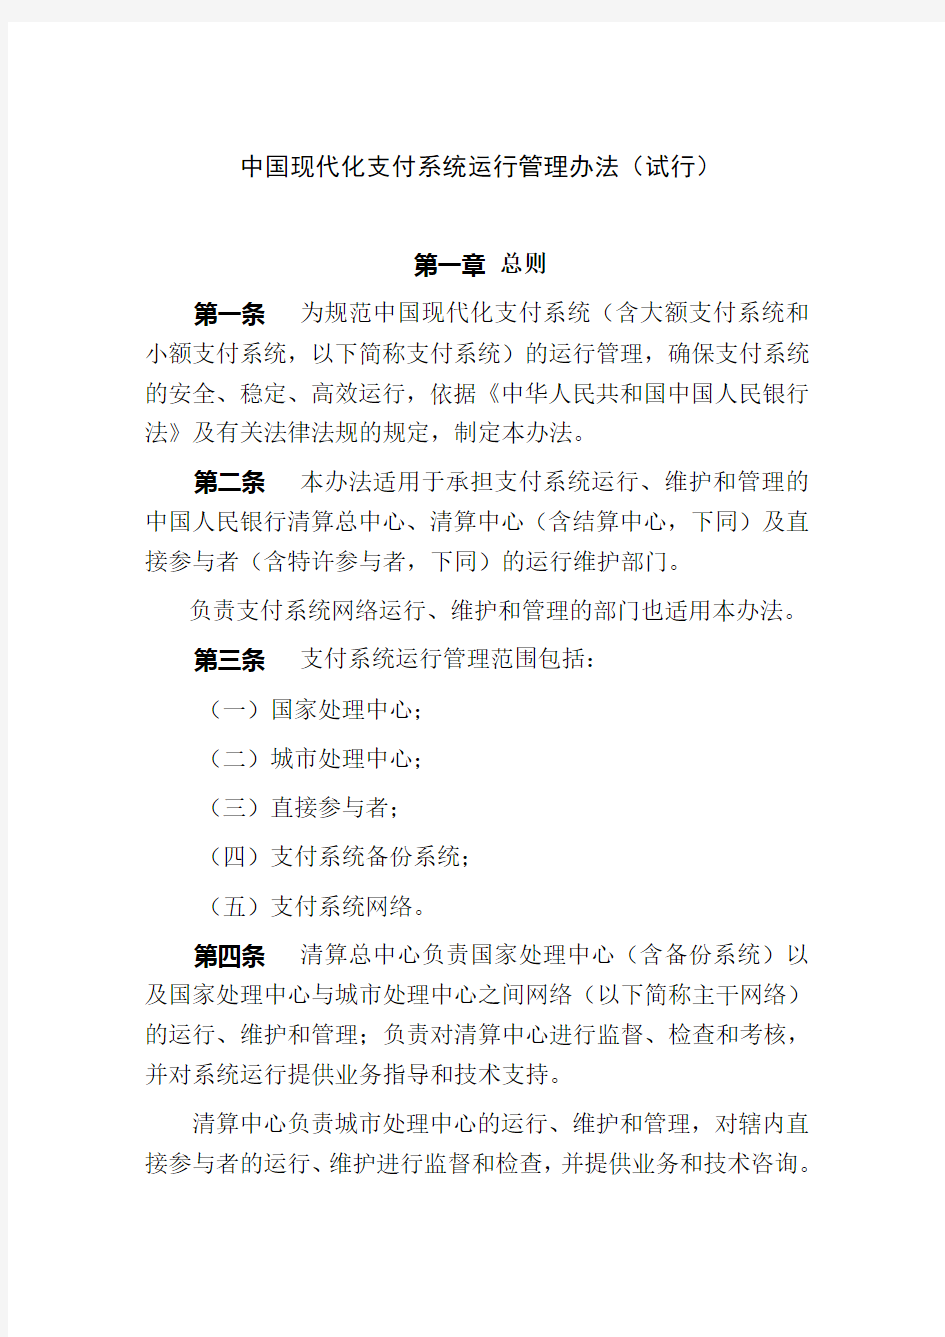 中国人民银行现代化支付系统运行管理办法